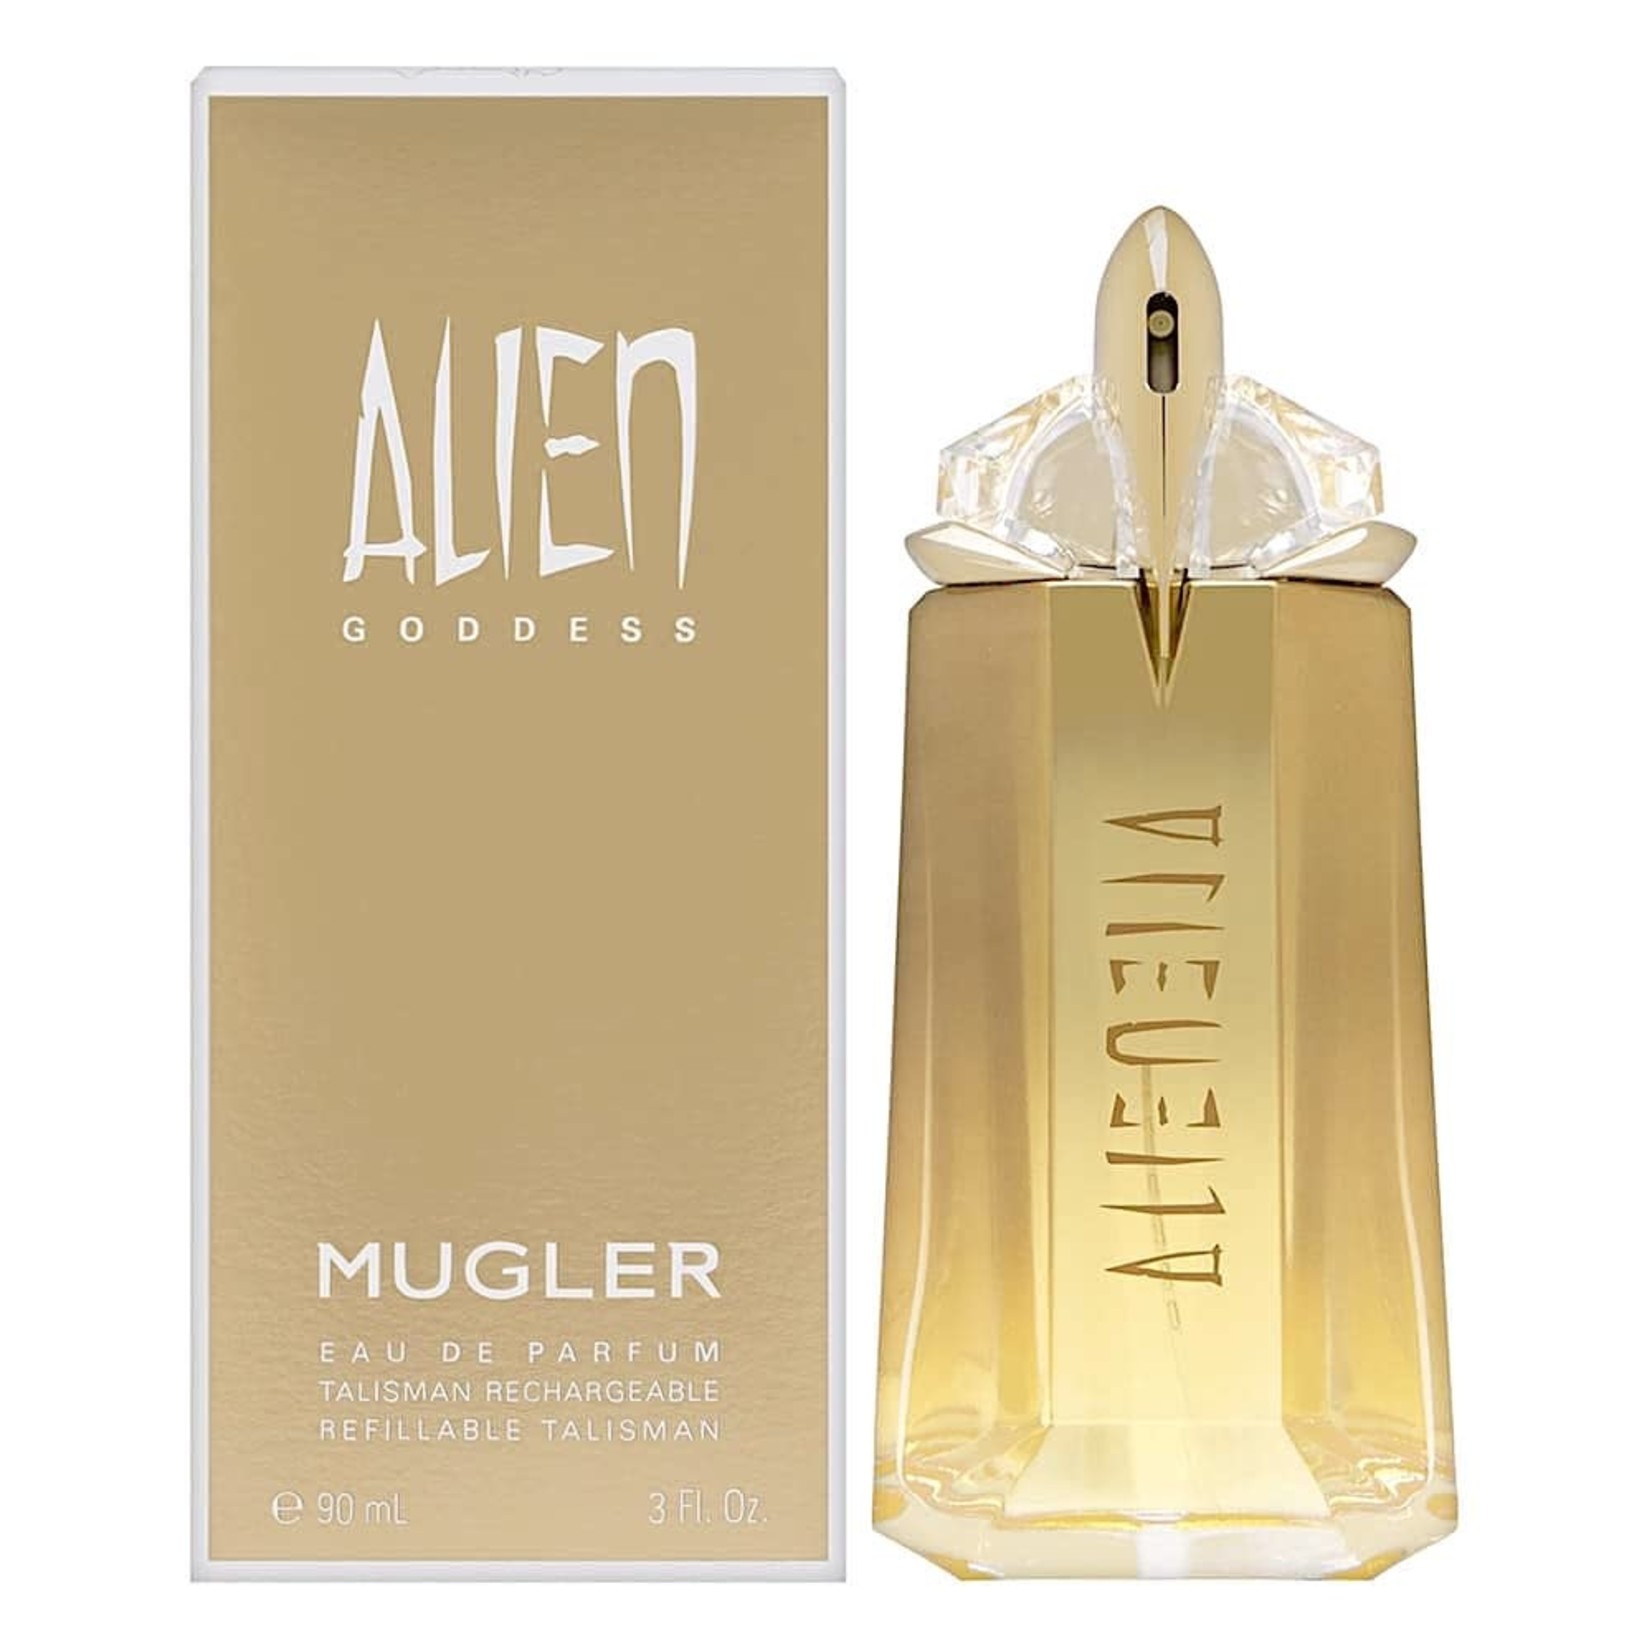 Thierry Mugler Alien Goddess Eau de Parfum